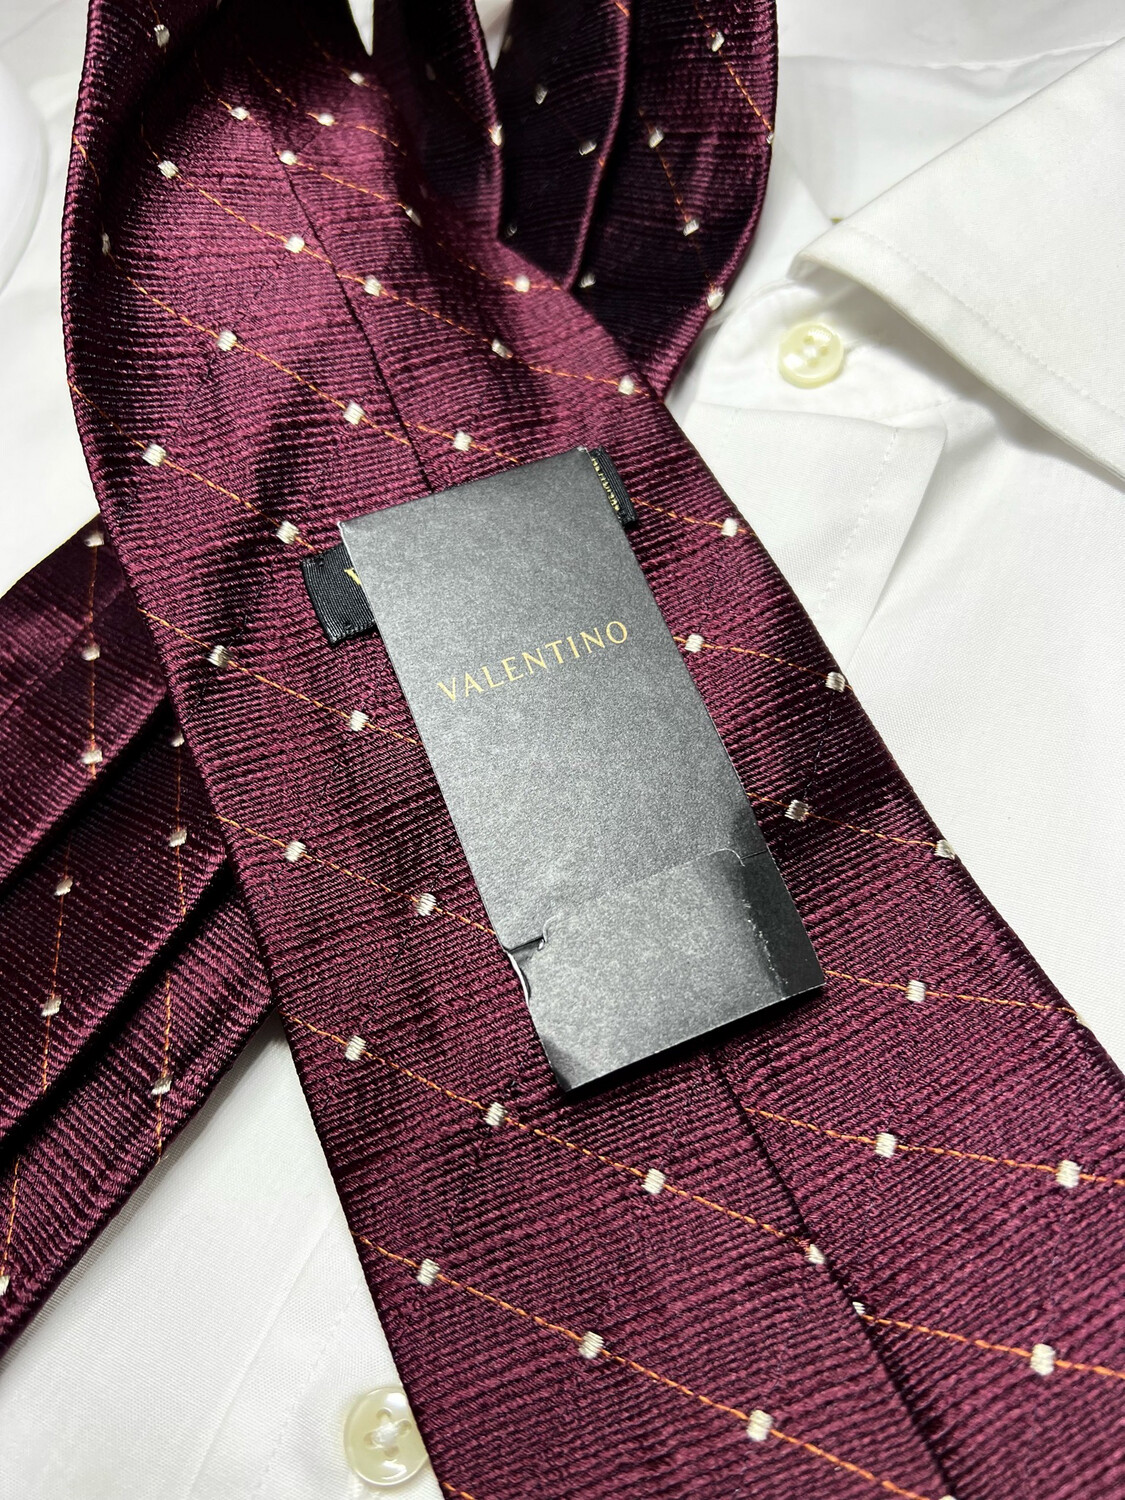 Cravatta Valentino nuova 100% seta bordeaux microfantasia 9,5 cm silk  necktie corbata